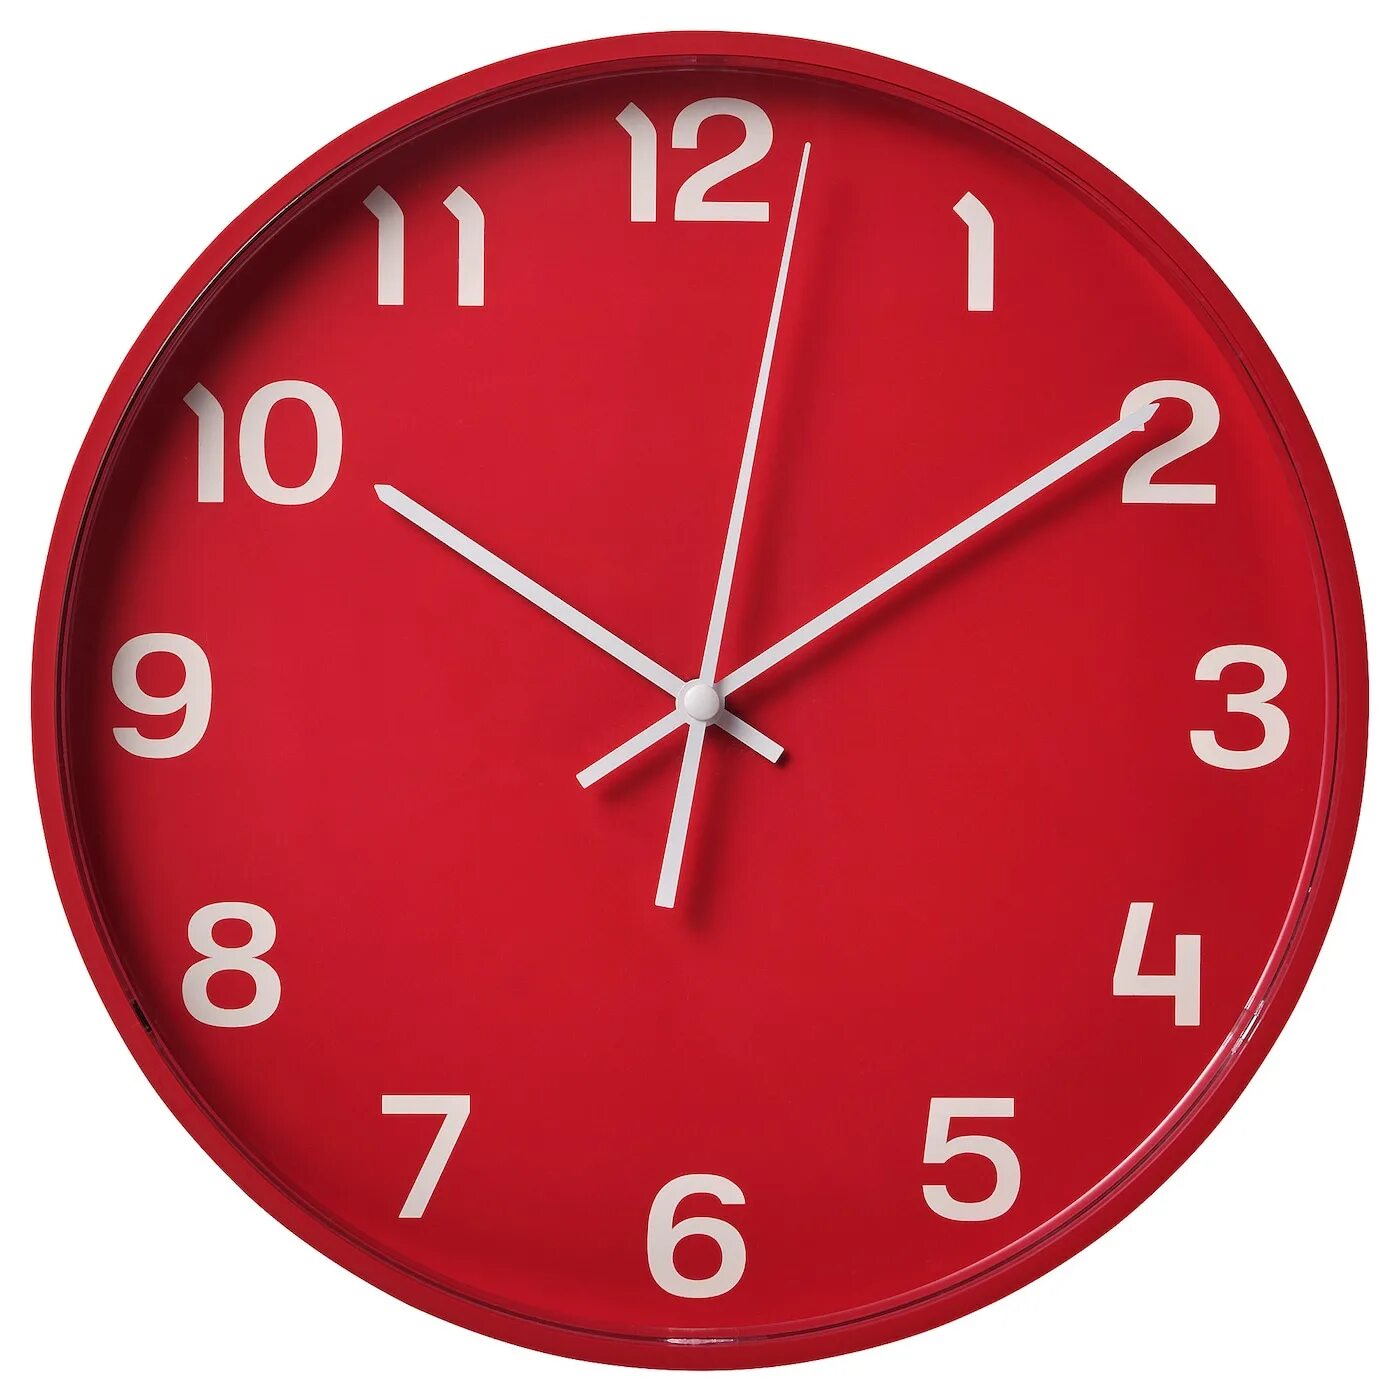 Часы 28 см. Pluttis настенные часы, низкое напряжение/красный, 28 см. Часы икеа плуттис красный. Часы настенные икеа плуттис. Часы красные ikea.